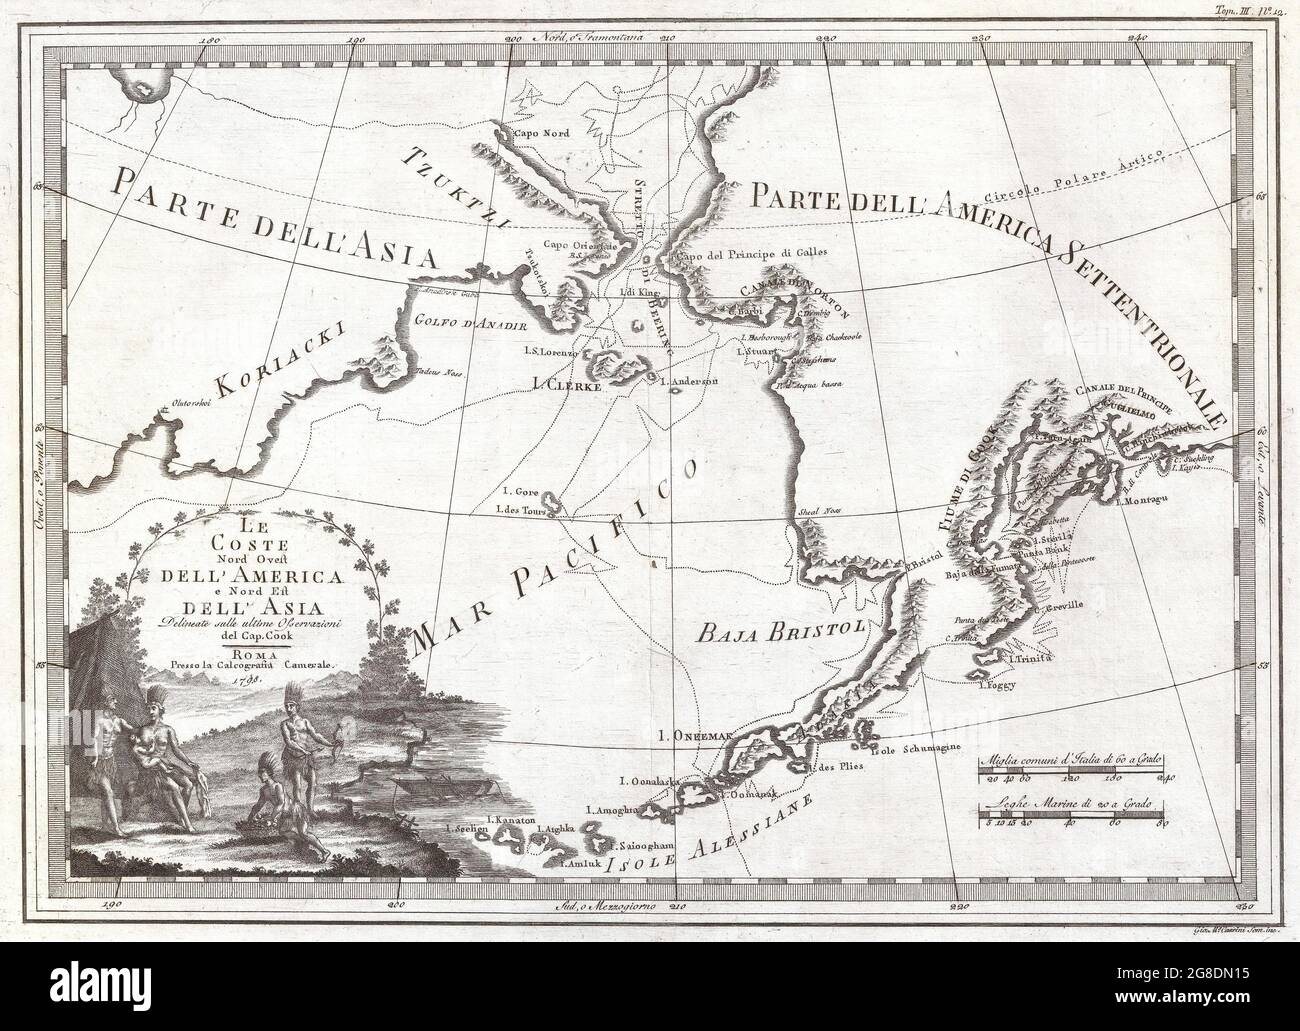 Cassinis Karte von Alaska, der Beringstraße und Sibirien aus dem Jahr 1798. Cassini veröffentlichte diese Karte in seinem Atlas von 1798, um die Entdeckungen von James Cook zu illustrieren. Stockfoto